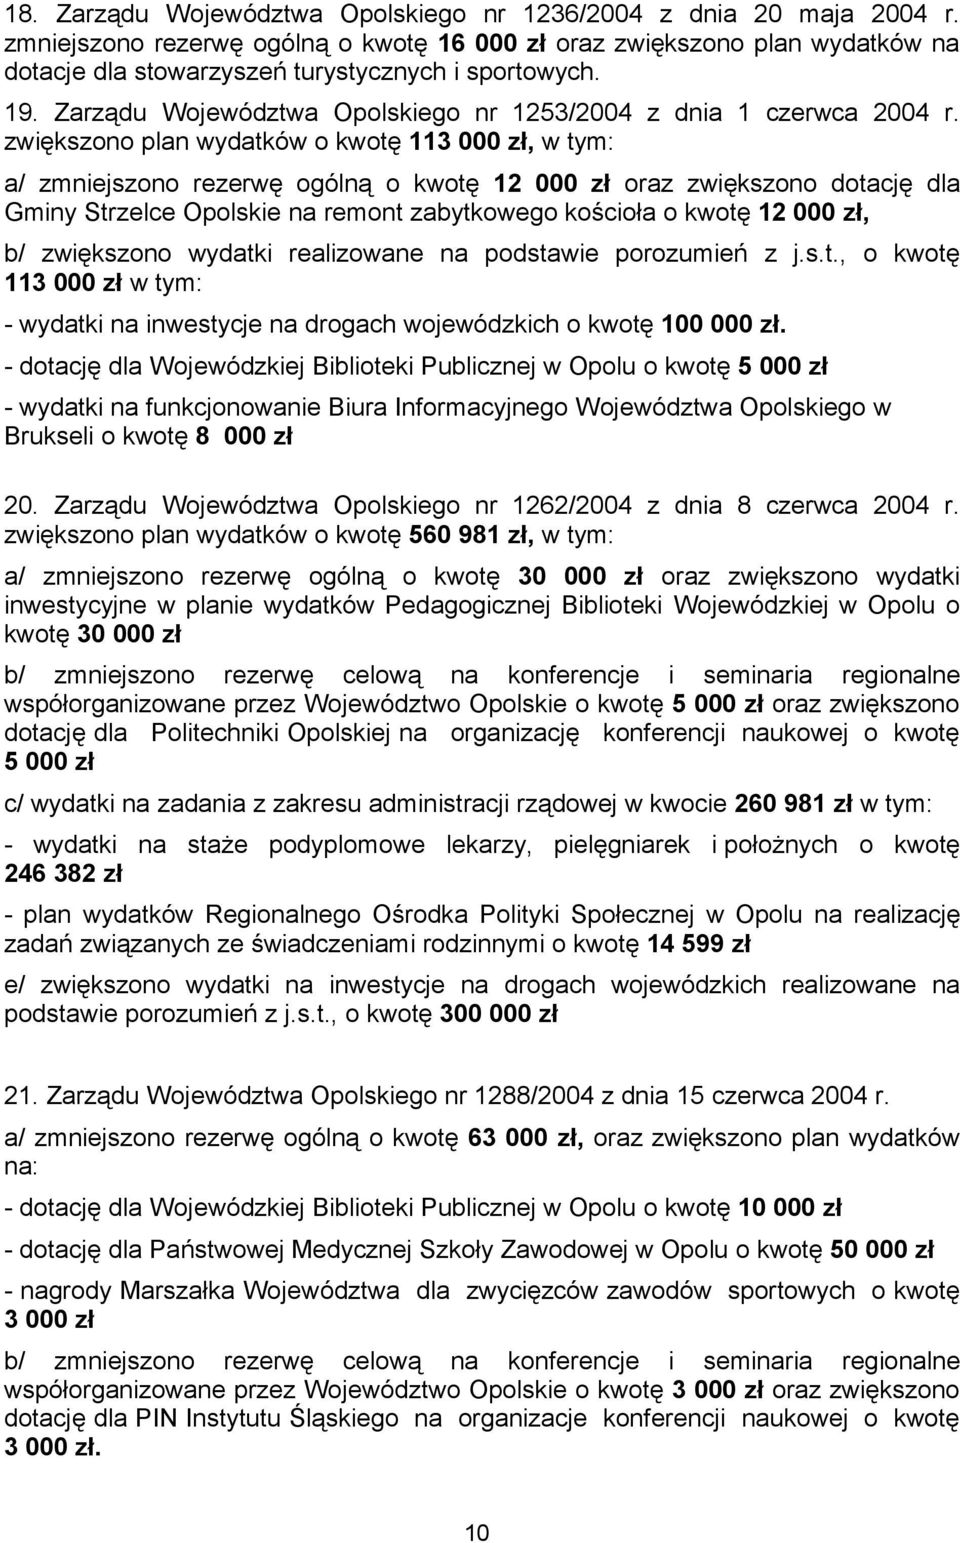 Zarządu Województwa Opolskiego nr 1253/2004 z dnia 1 czerwca 2004 r.